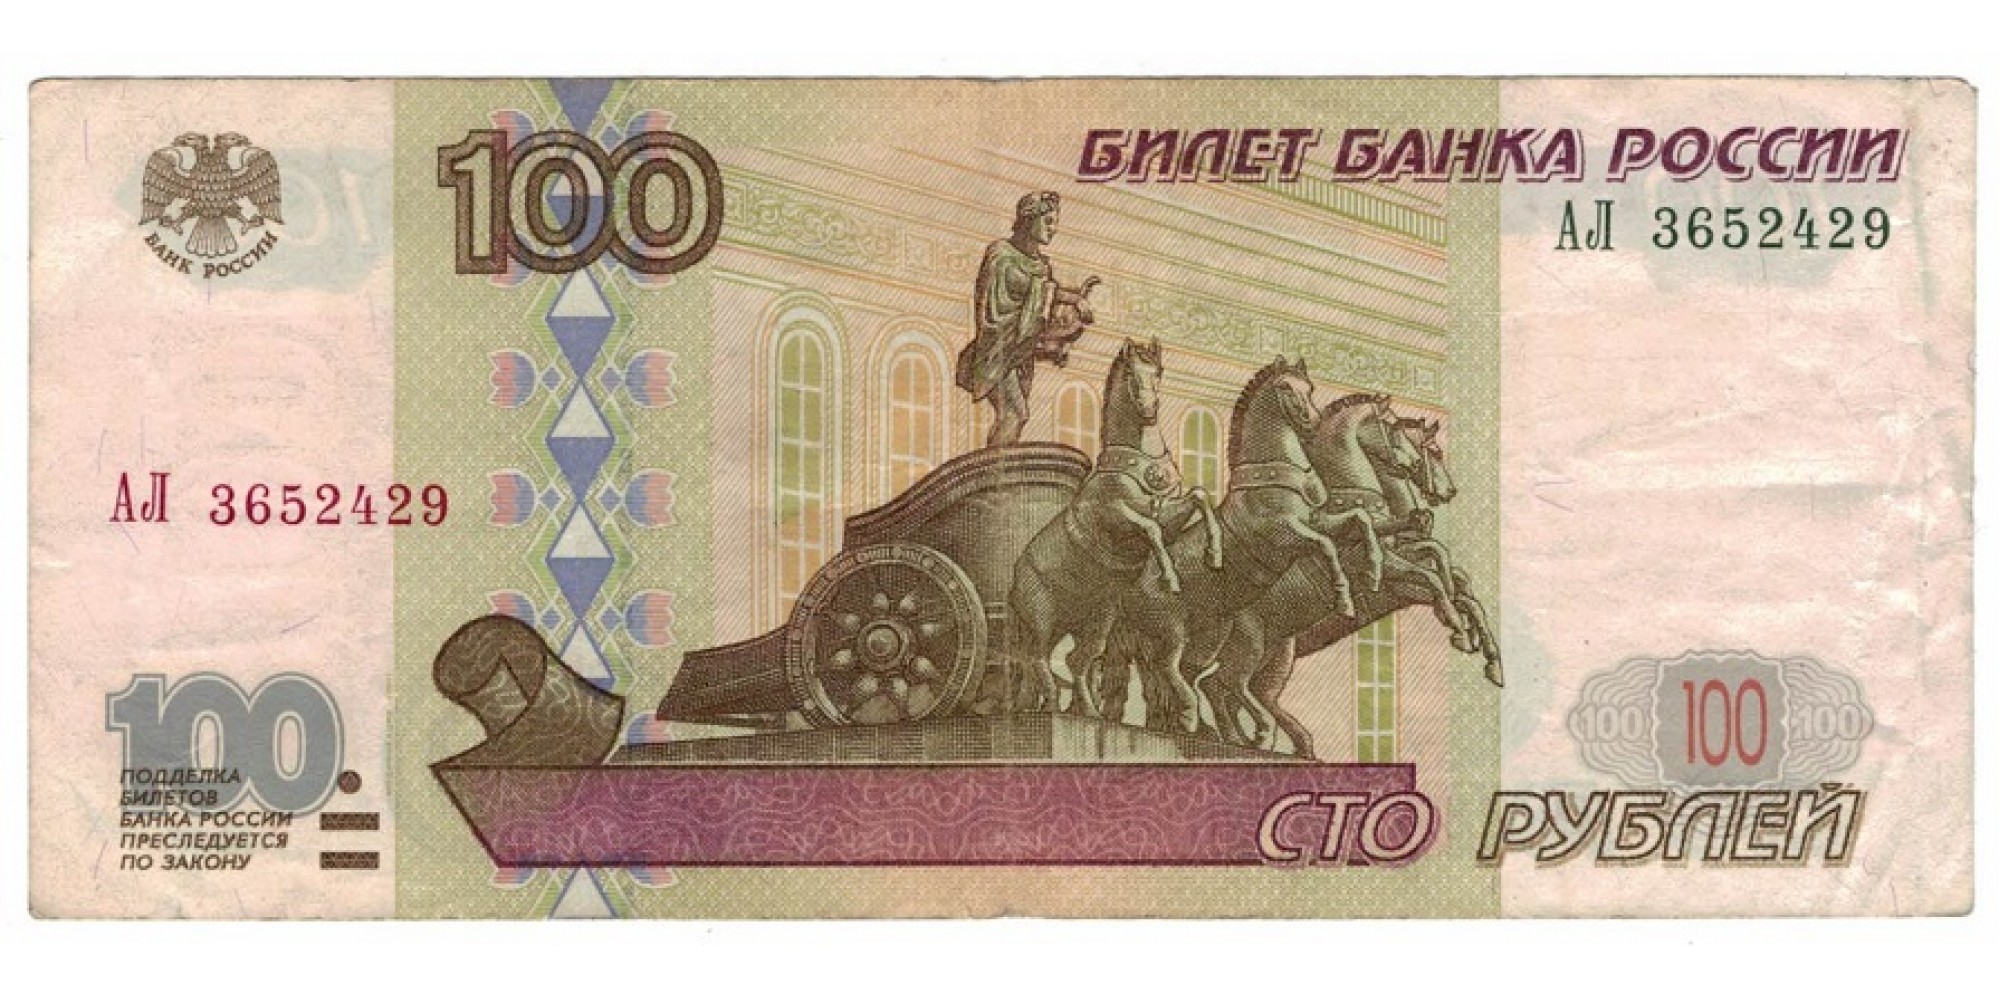 Россия 100 рублей 1997 год модификация 2001 год редкая серия АЛ 3652429